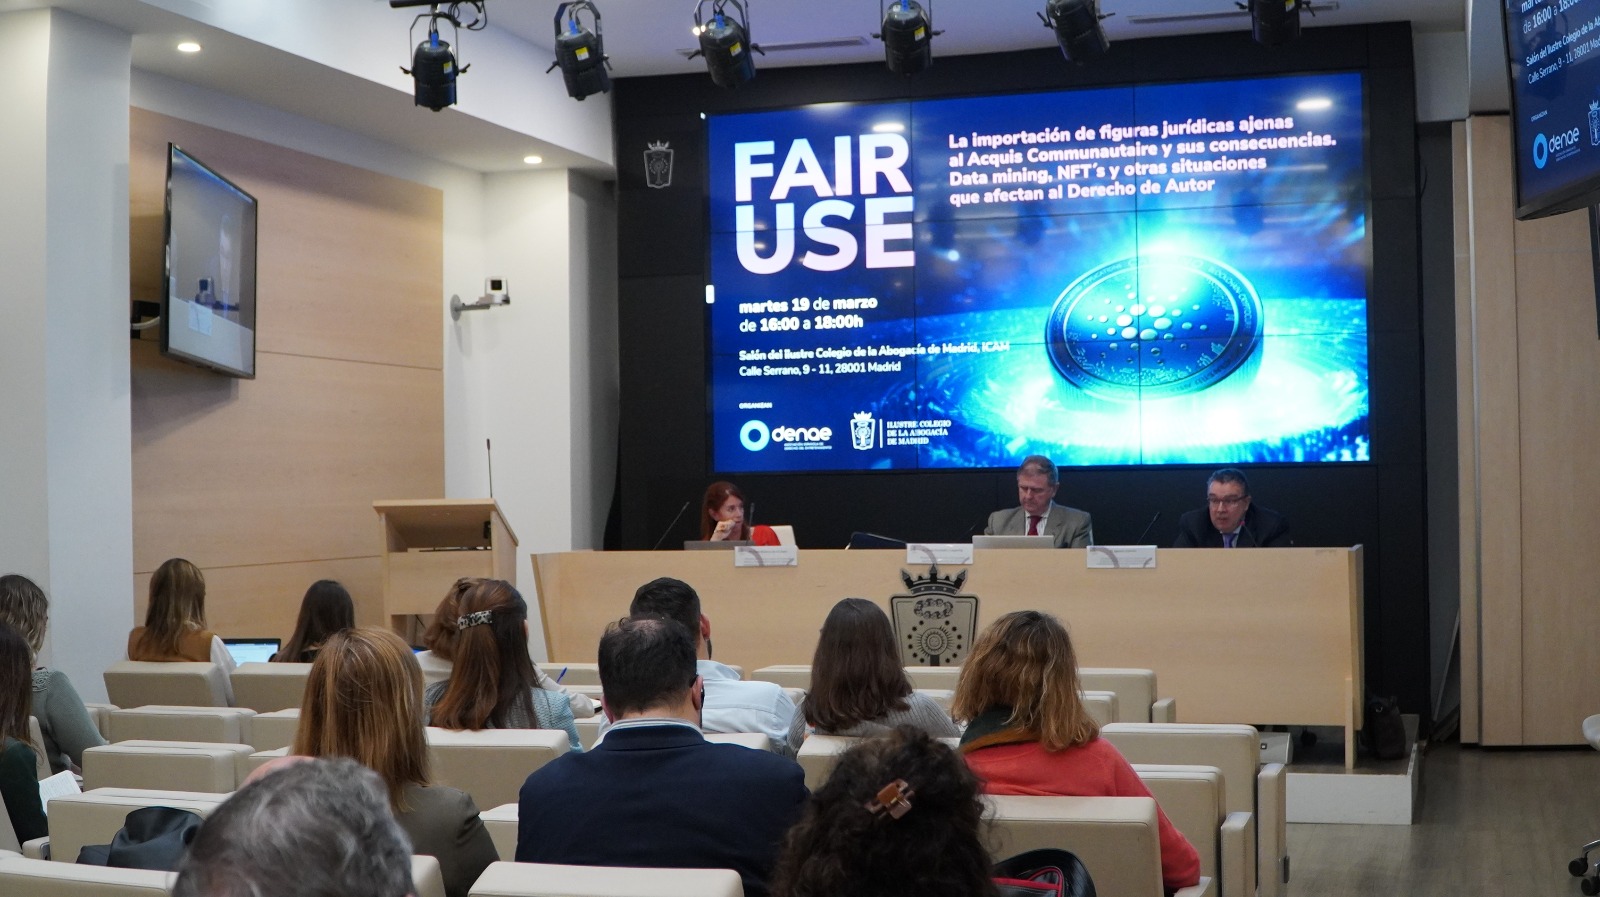 La Sección de Propiedad Intelectual e Industrial del ICAM analiza la compatibilidad del fair use en el marco legal europeo